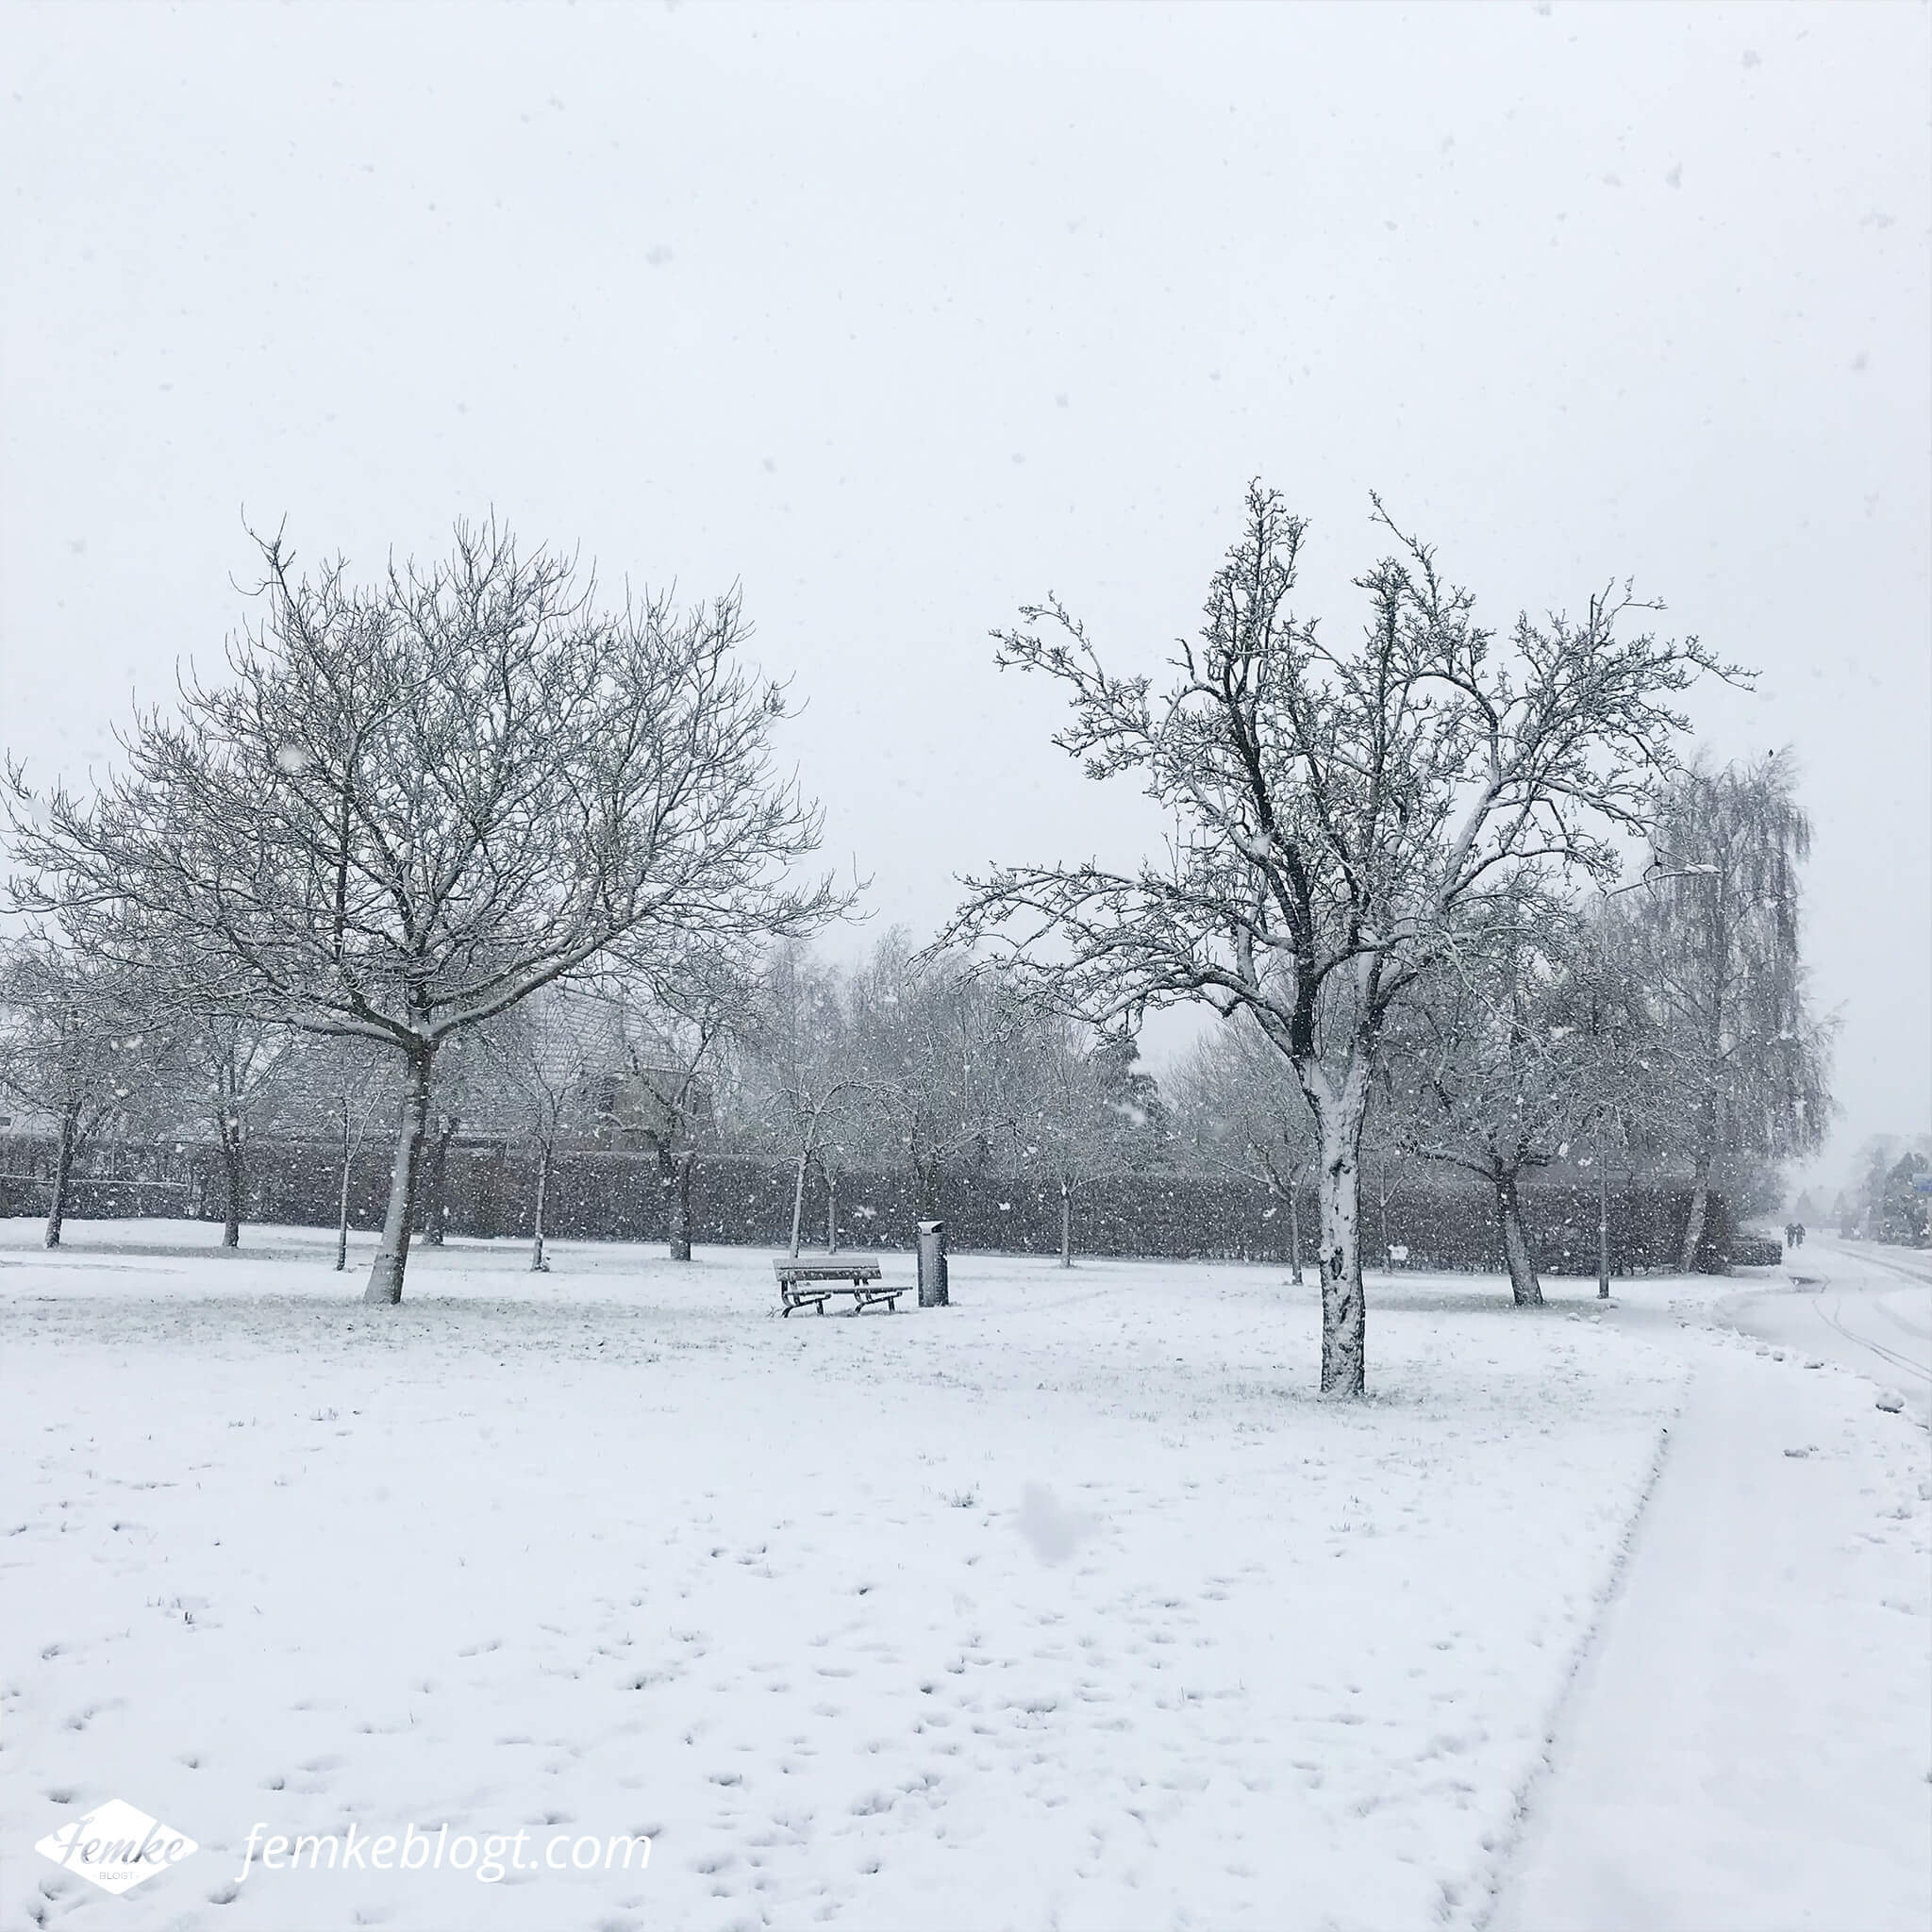 Maandoverzicht december | Sneeuw in Nederland, dus tijd voor een winterse wandeling!